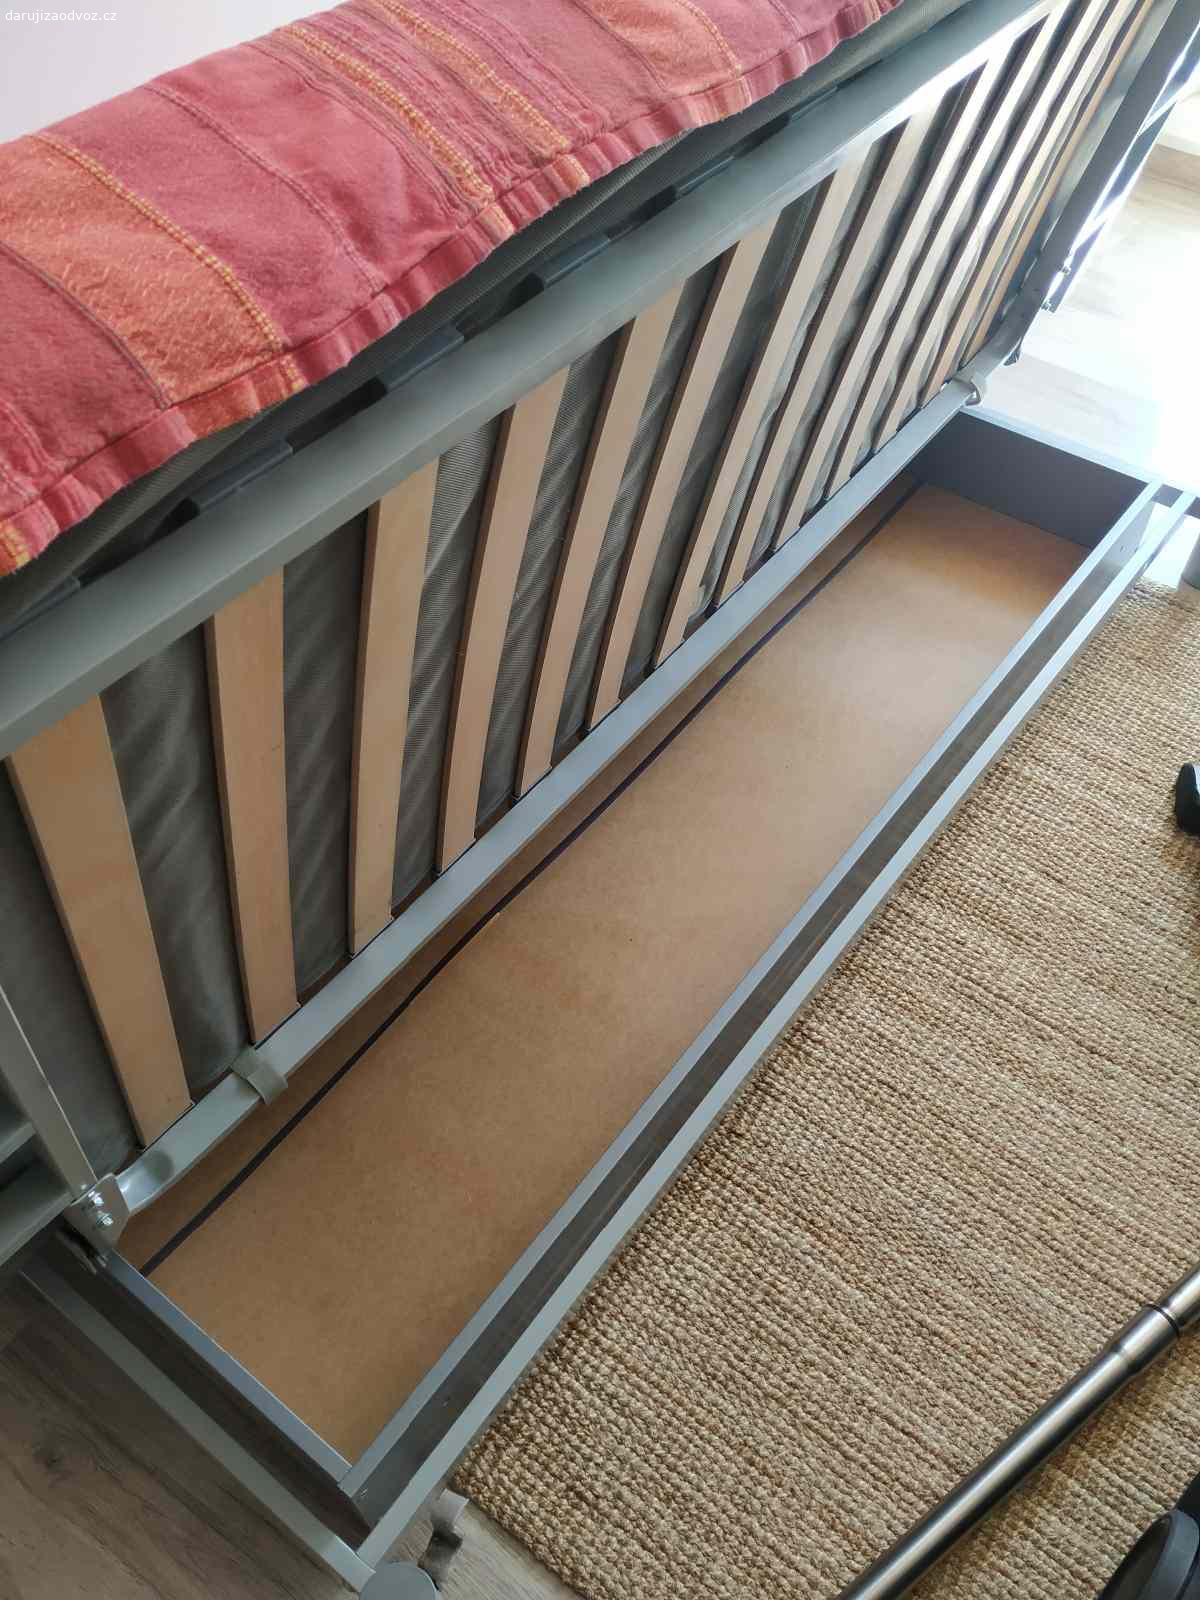 Daruji úložný prostor pod gauč nebo postel. Původně z IKEA a pod gauč, ale vlezl se i pod postel, když bylo potřeba. Rozměry: výška 16 cm, šířka (hloubka) 69 cm, délka 165 cm.